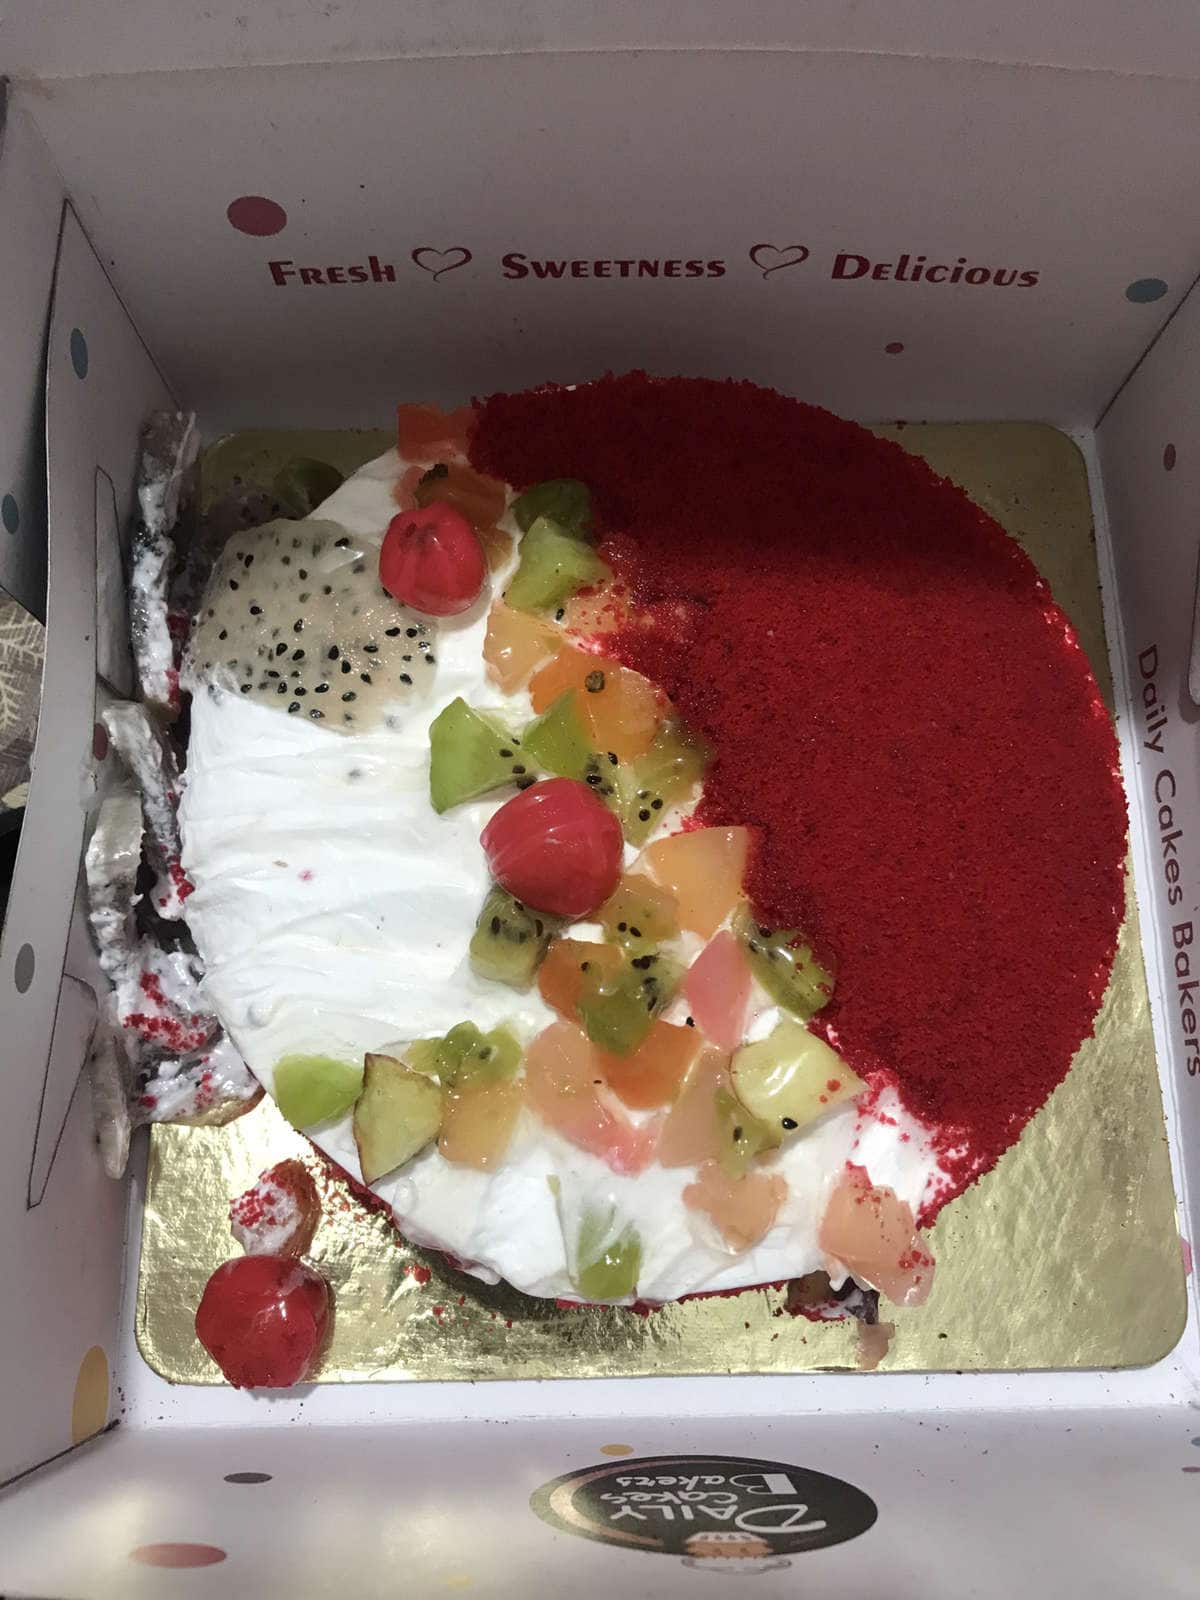 CakeBee's Teacher's Day Delight: Send Joyful Cakes